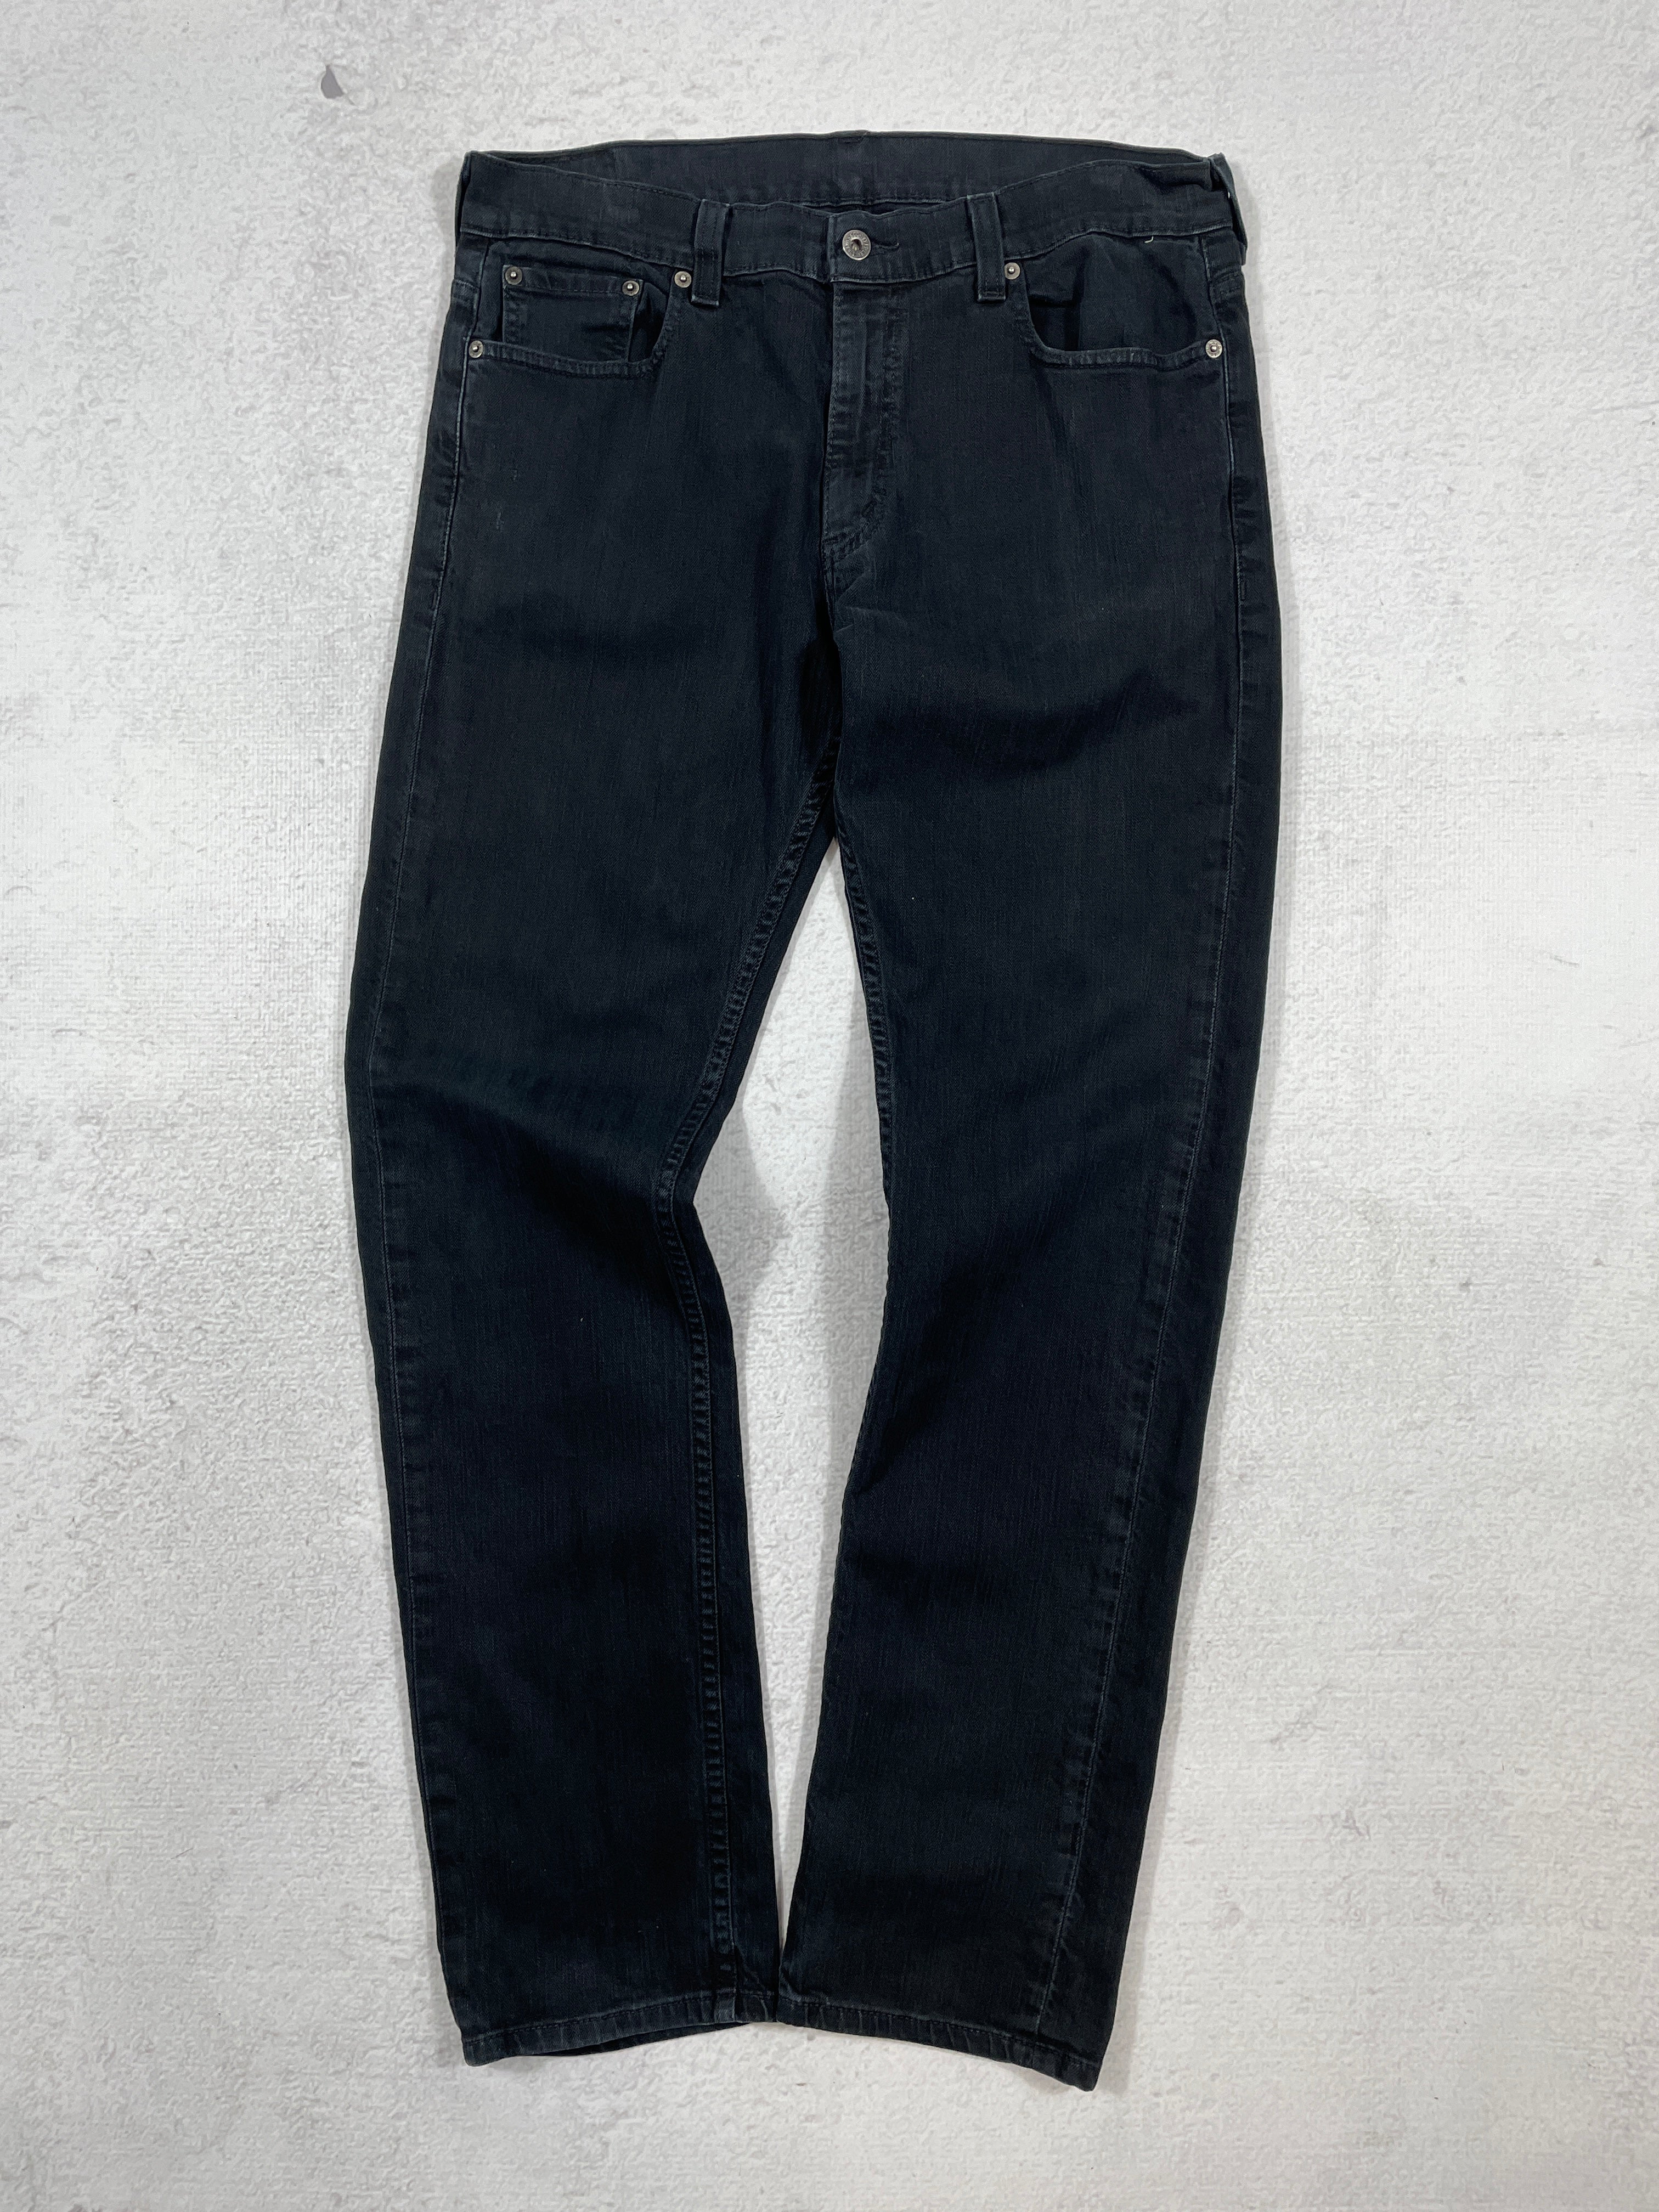 Vintage Levis 511 Jeans - Men's 36Wx32L